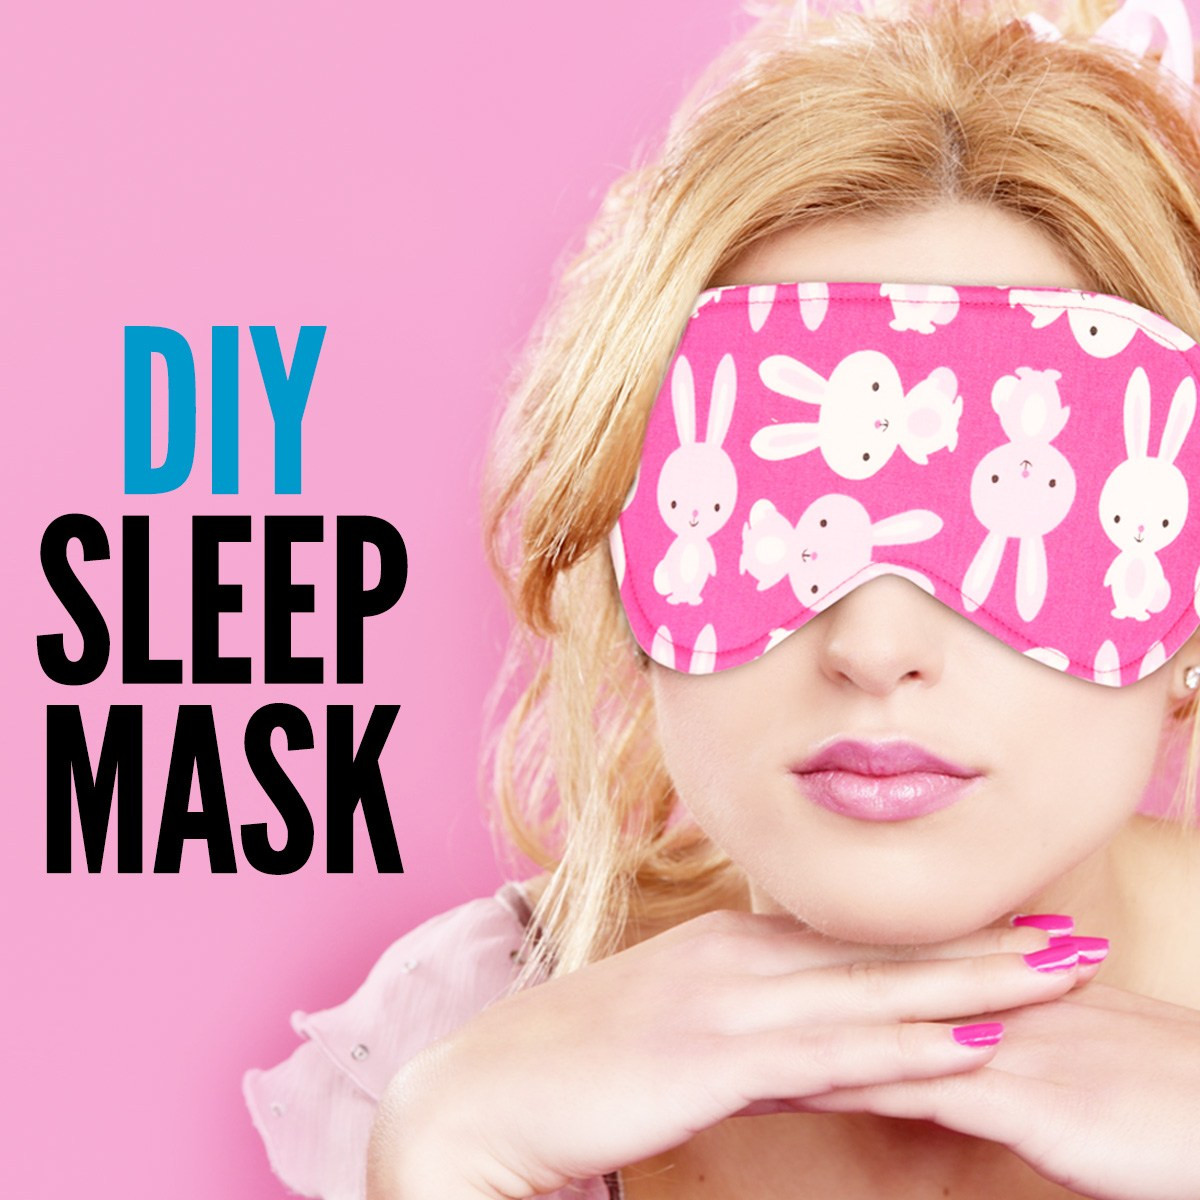 DIY Sleep Masks
 DIY Sleep Mask Easy Tutorial With Free Pattern TREASURIE